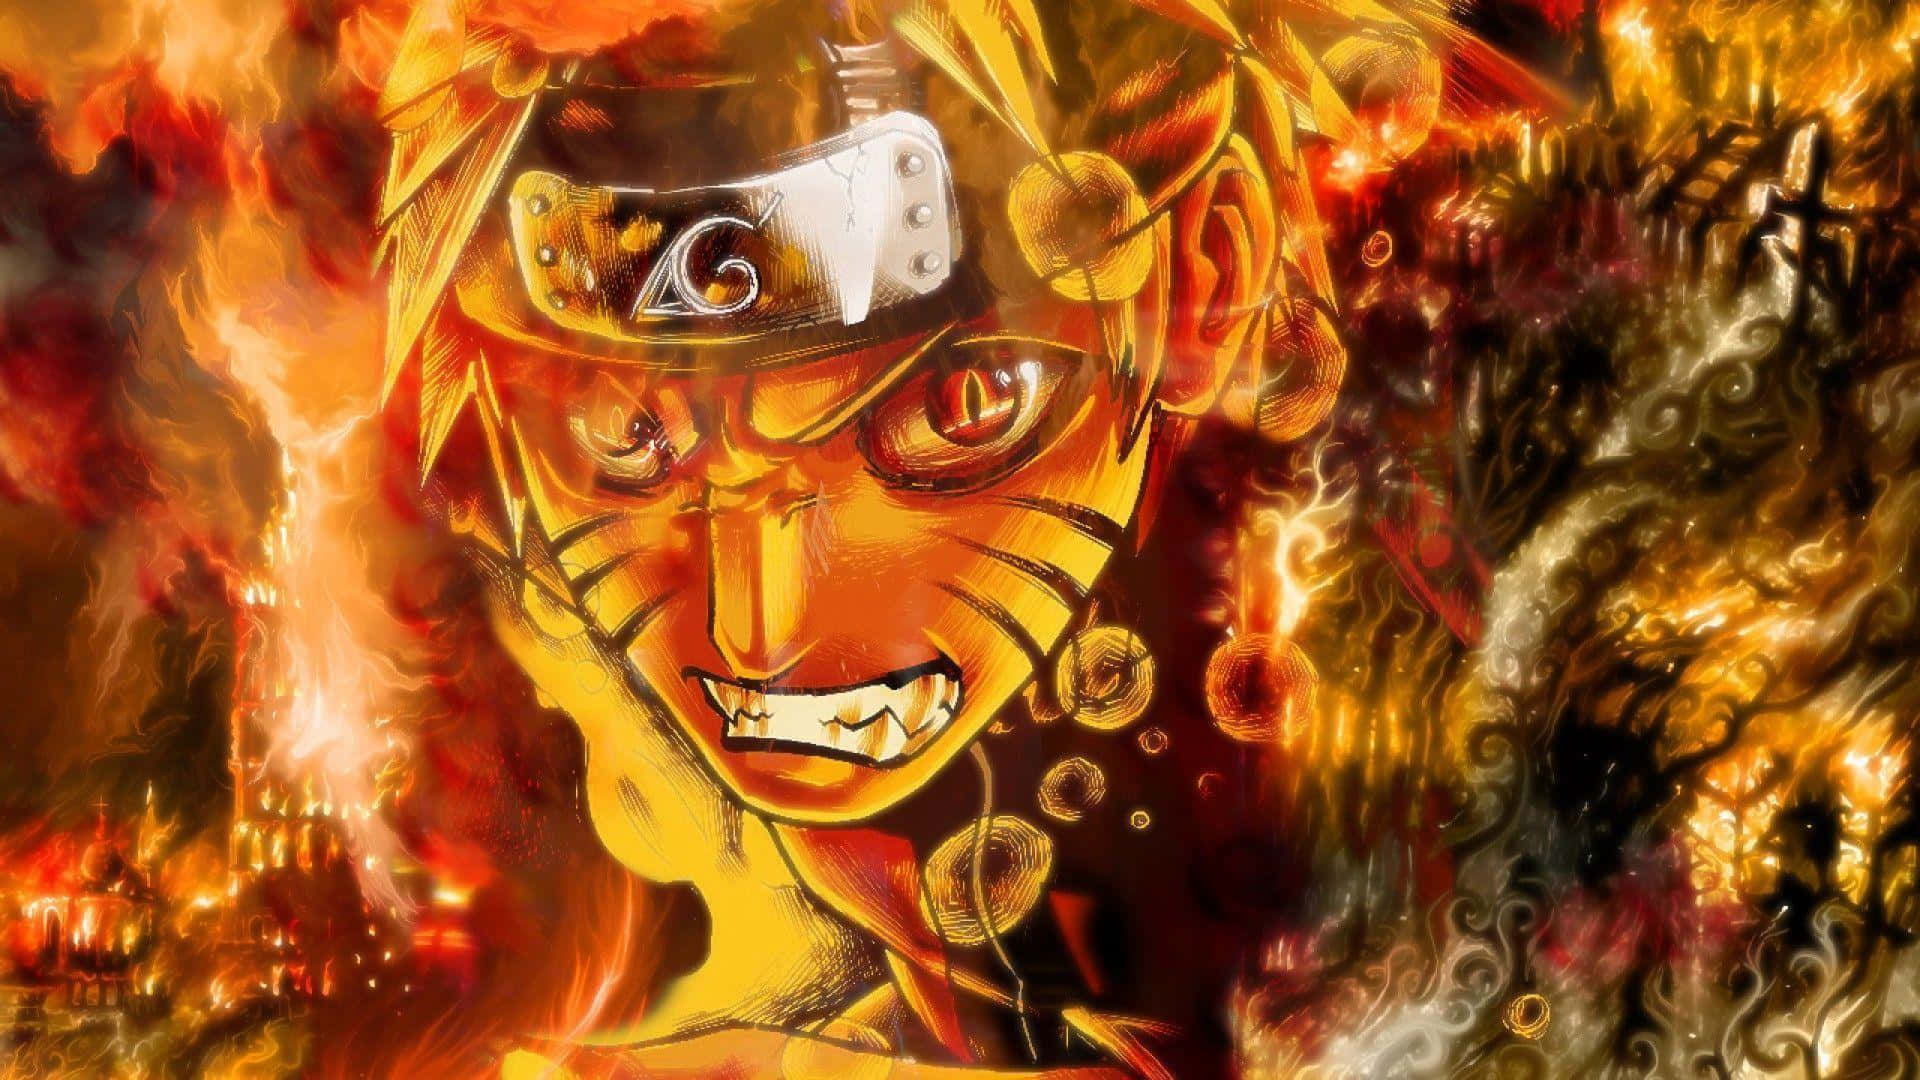 Papelde Parede Do Naruto De Desktop Com O Chakra Da Besta De Cauda Enraivecida. Papel de Parede